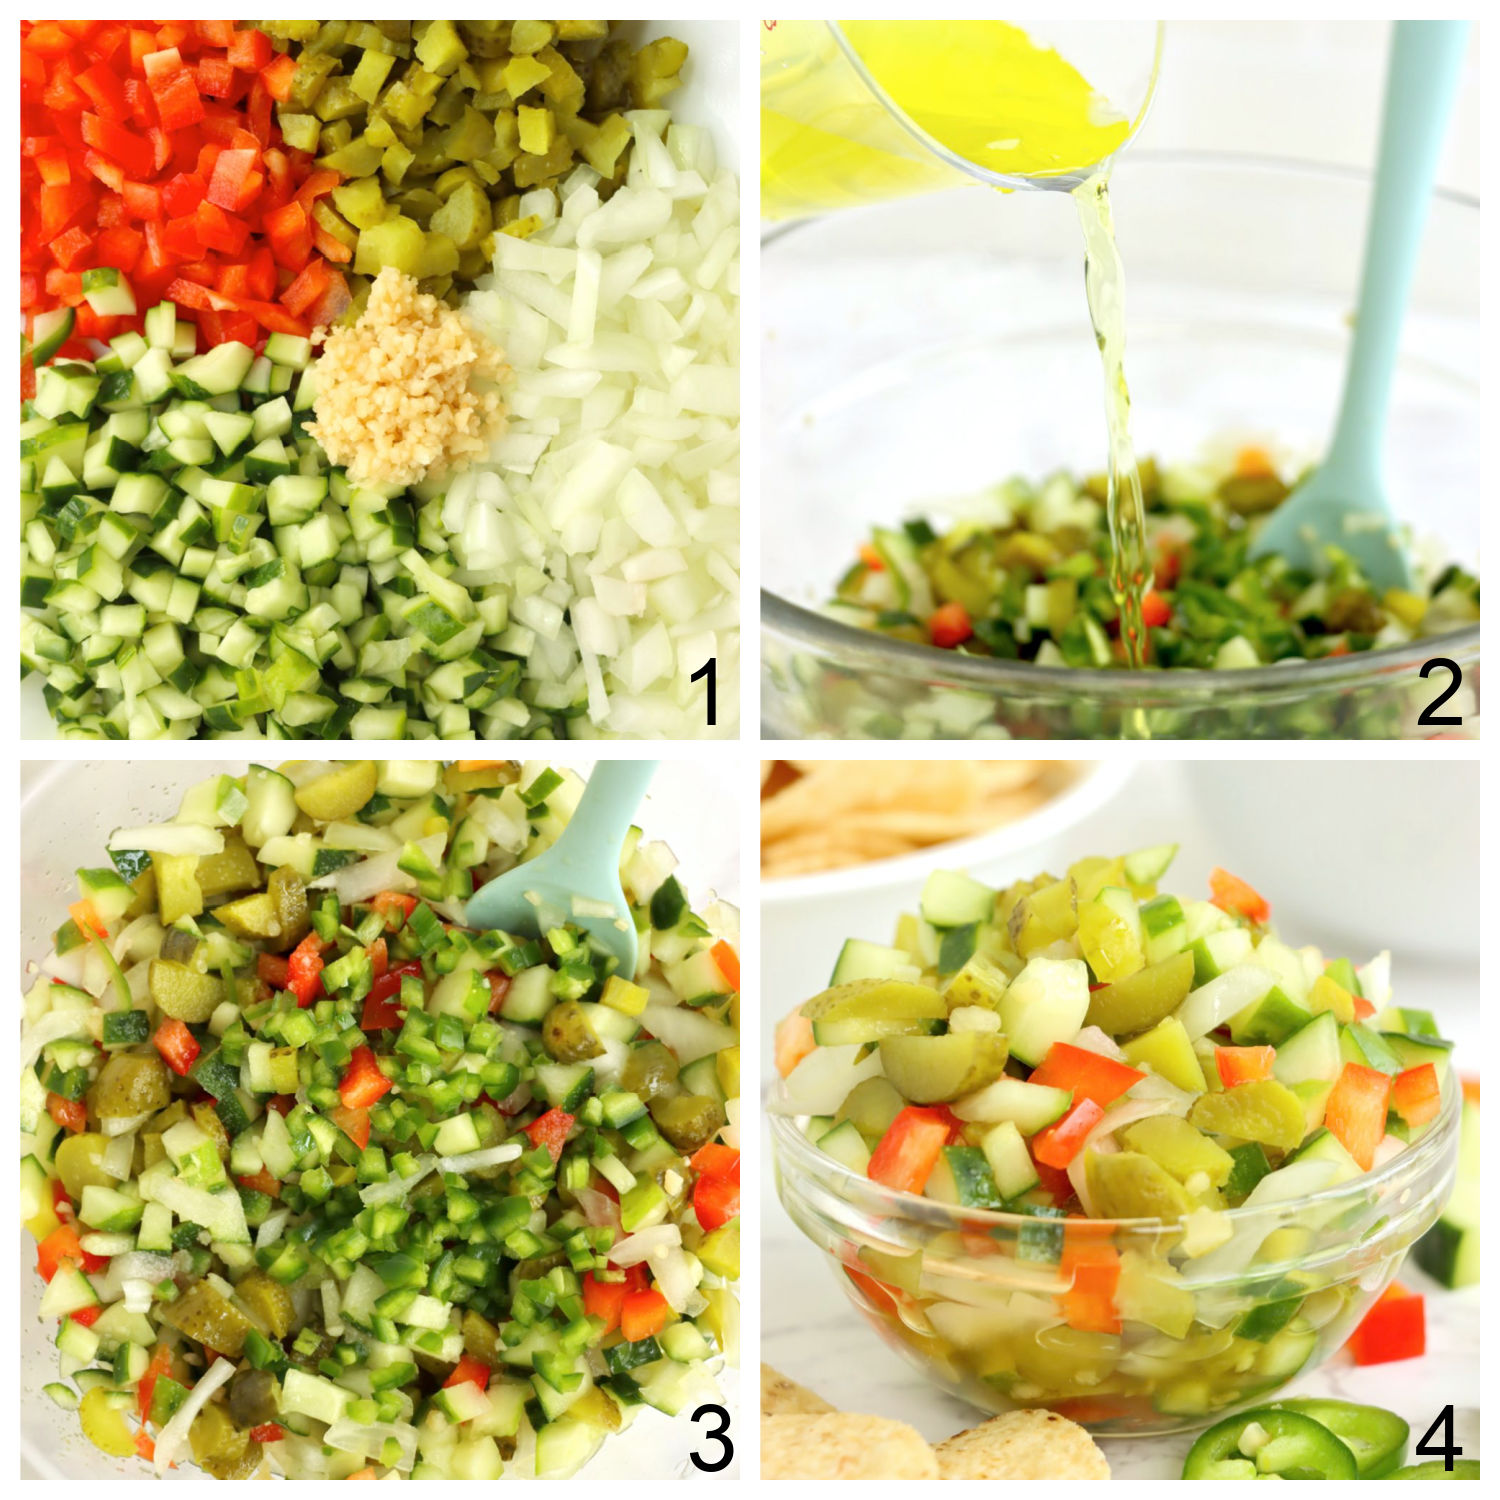 steps for making homemade pickle de gallo